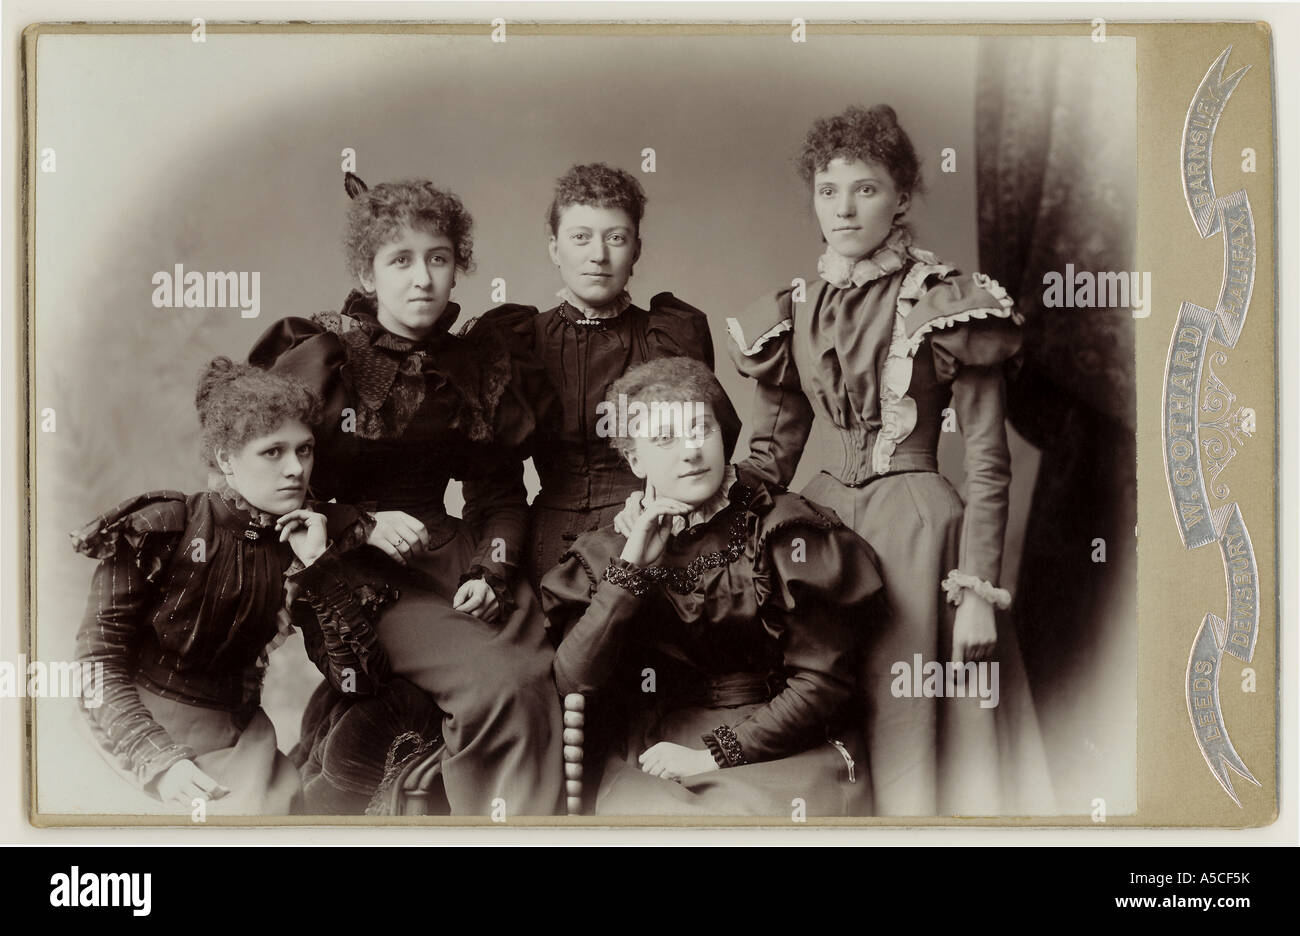 Kabinettfoto einer Gruppe viktorianischer Frauen aus den 1890er Jahren, möglicherweise ein College- oder Universitätsporträt, Hochschulbildung, Yorkshire, England, Großbritannien um 1895 Stockfoto